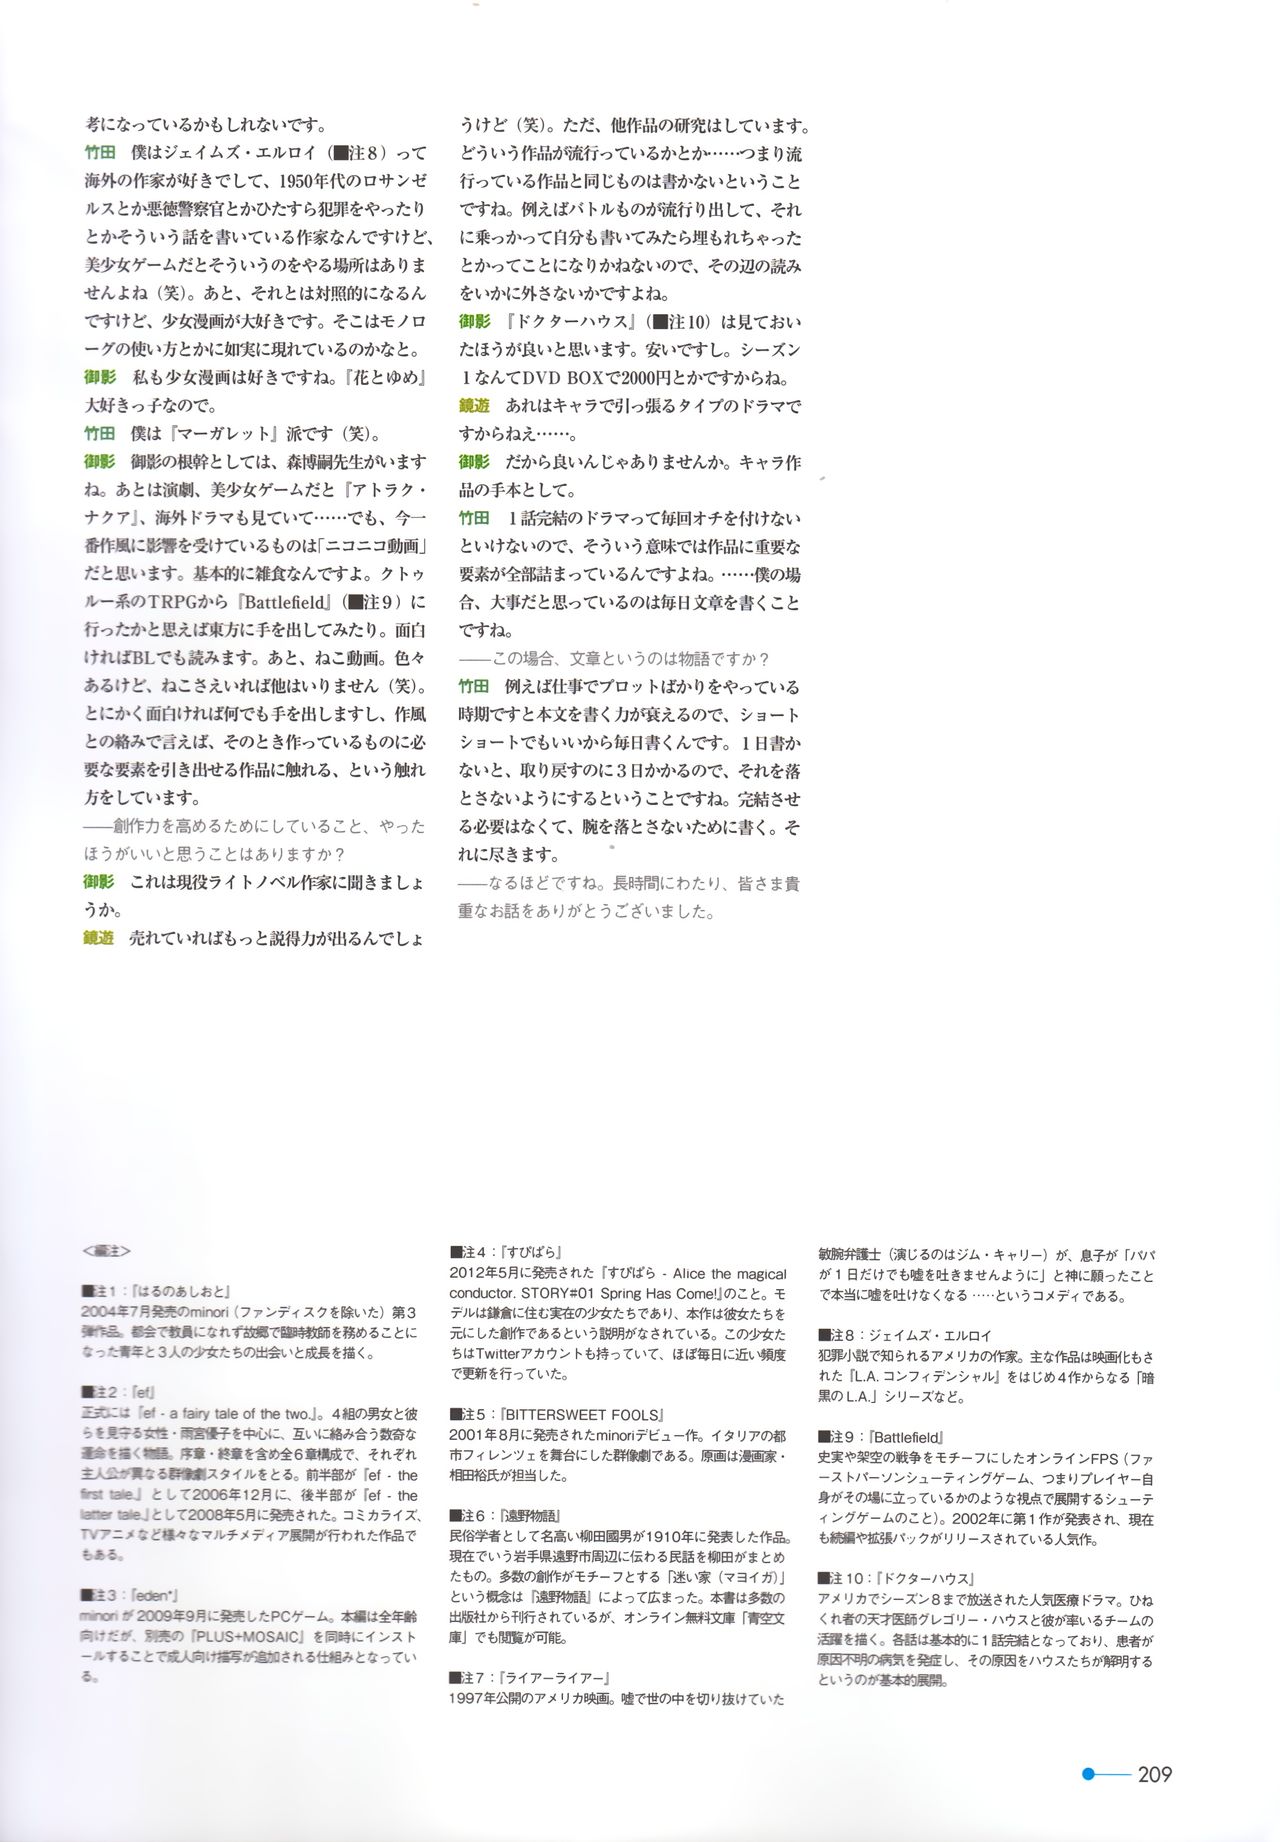 [minori] Natsuzora no Perseus Visual Fan Book [minori] 夏空のペルセウス Visual Fan Book